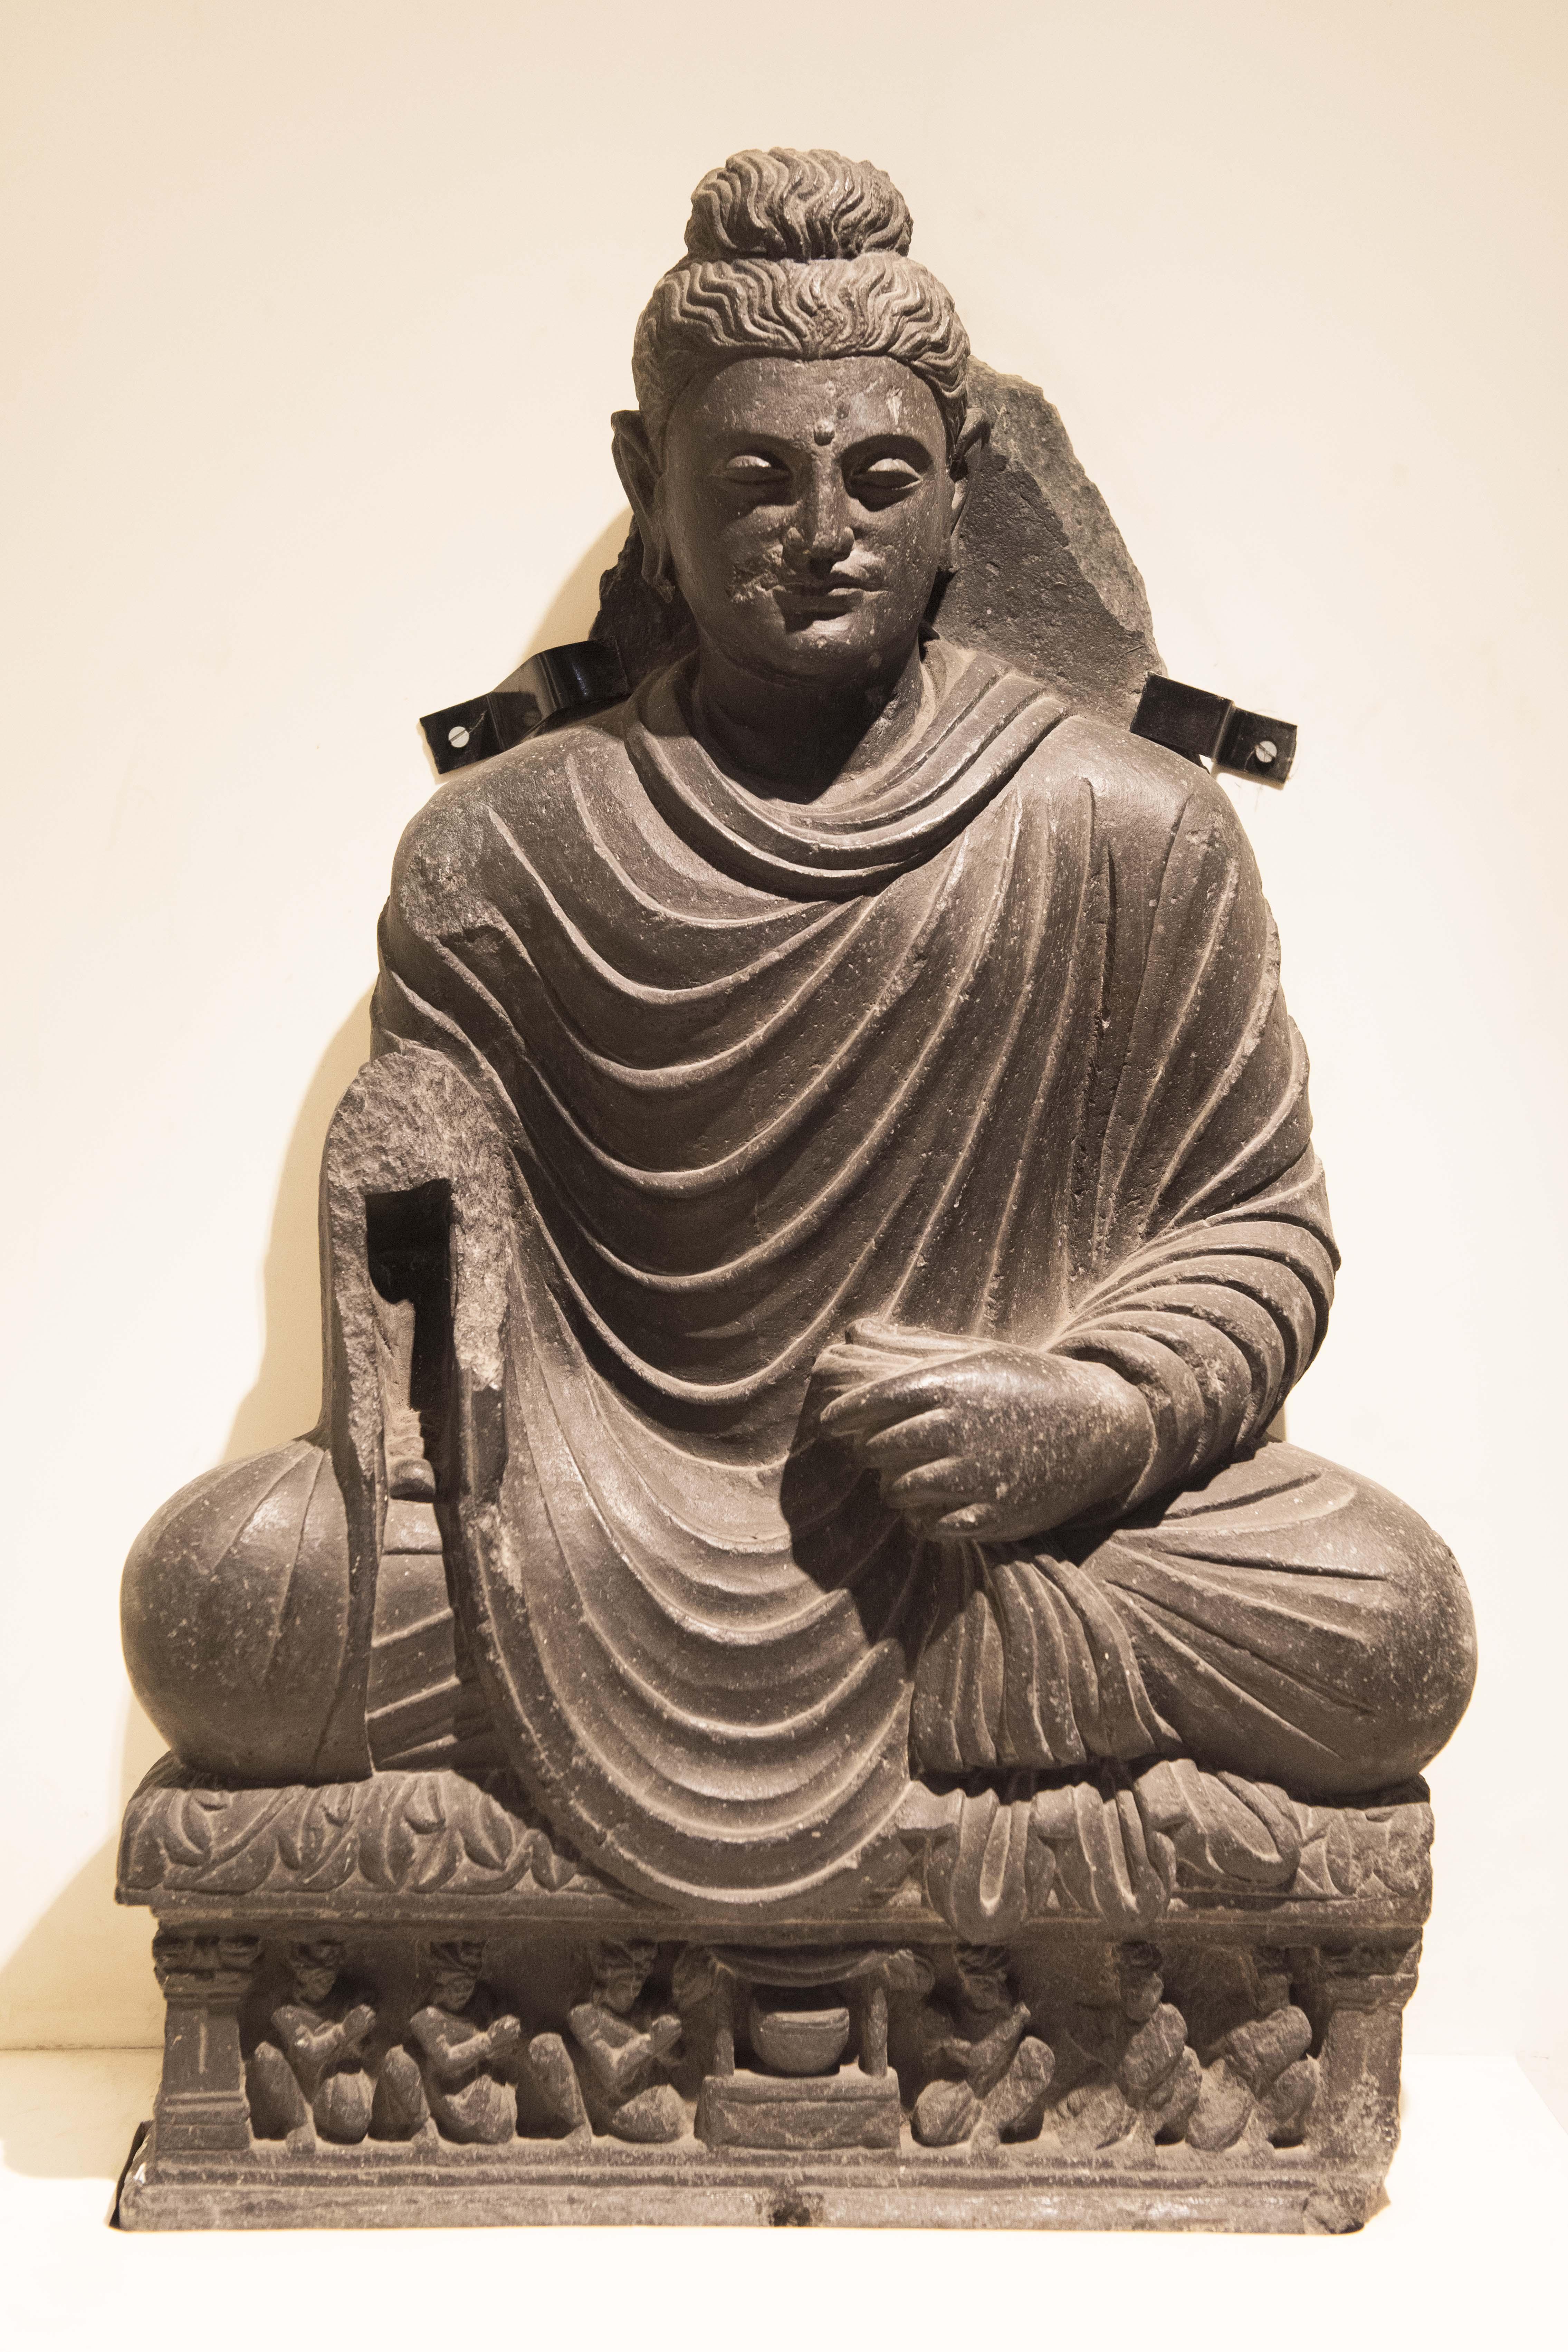 帝国的遗产——加尔各答印度博物馆藏犍陀罗艺术